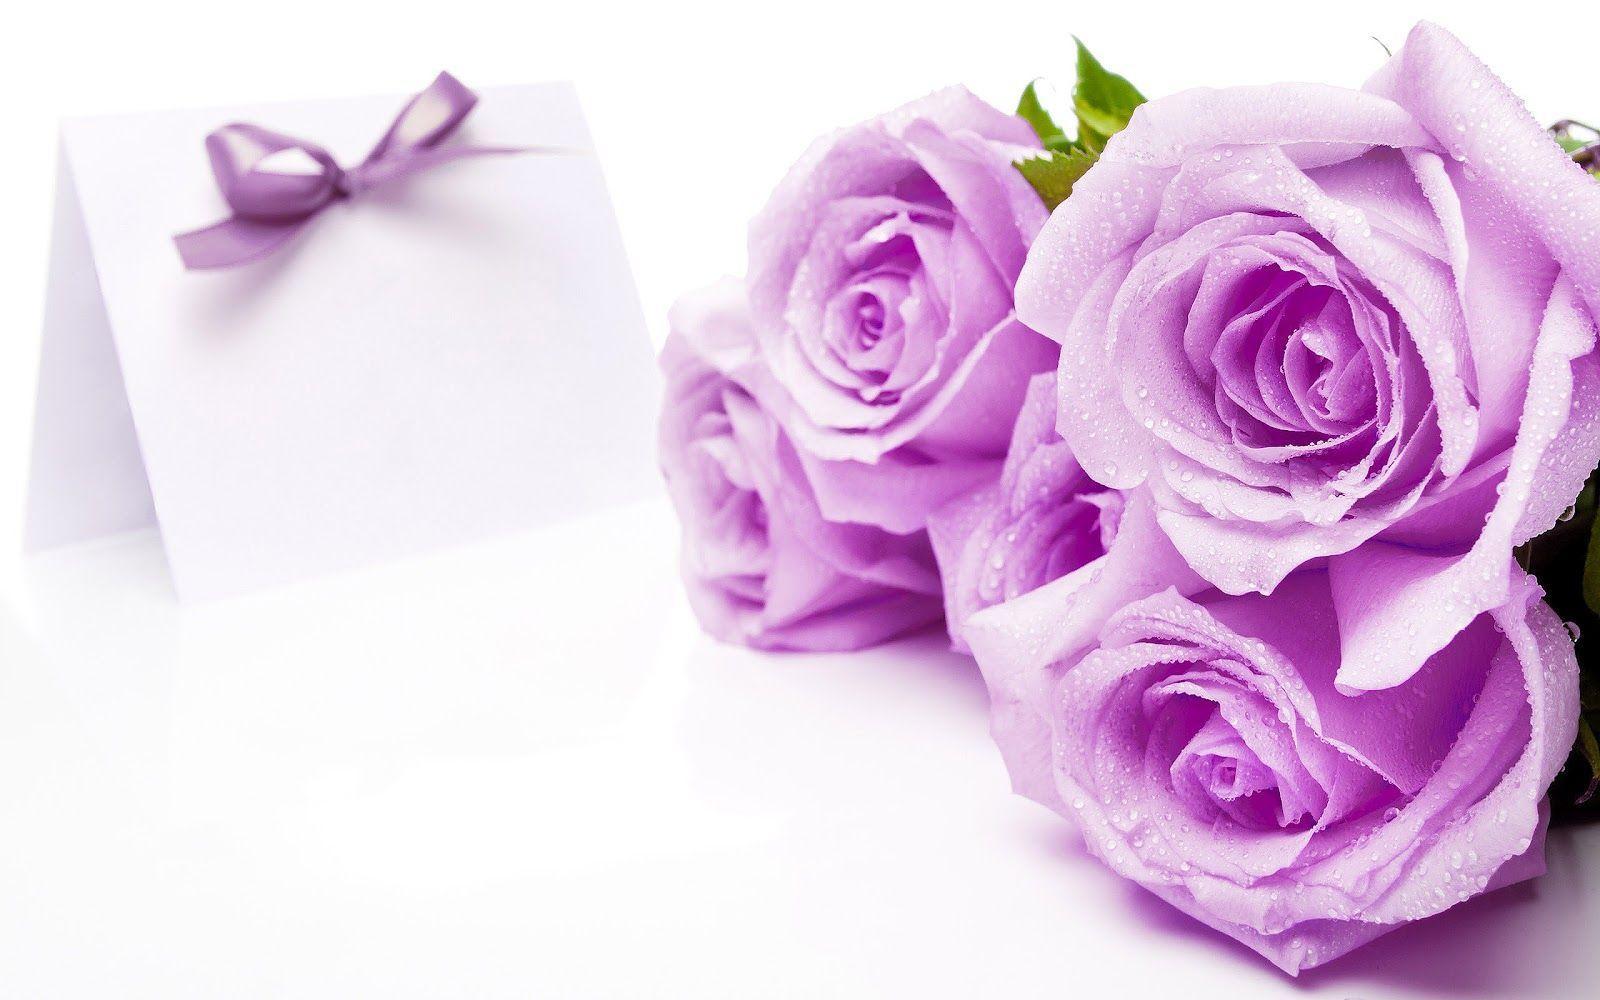 violet roses